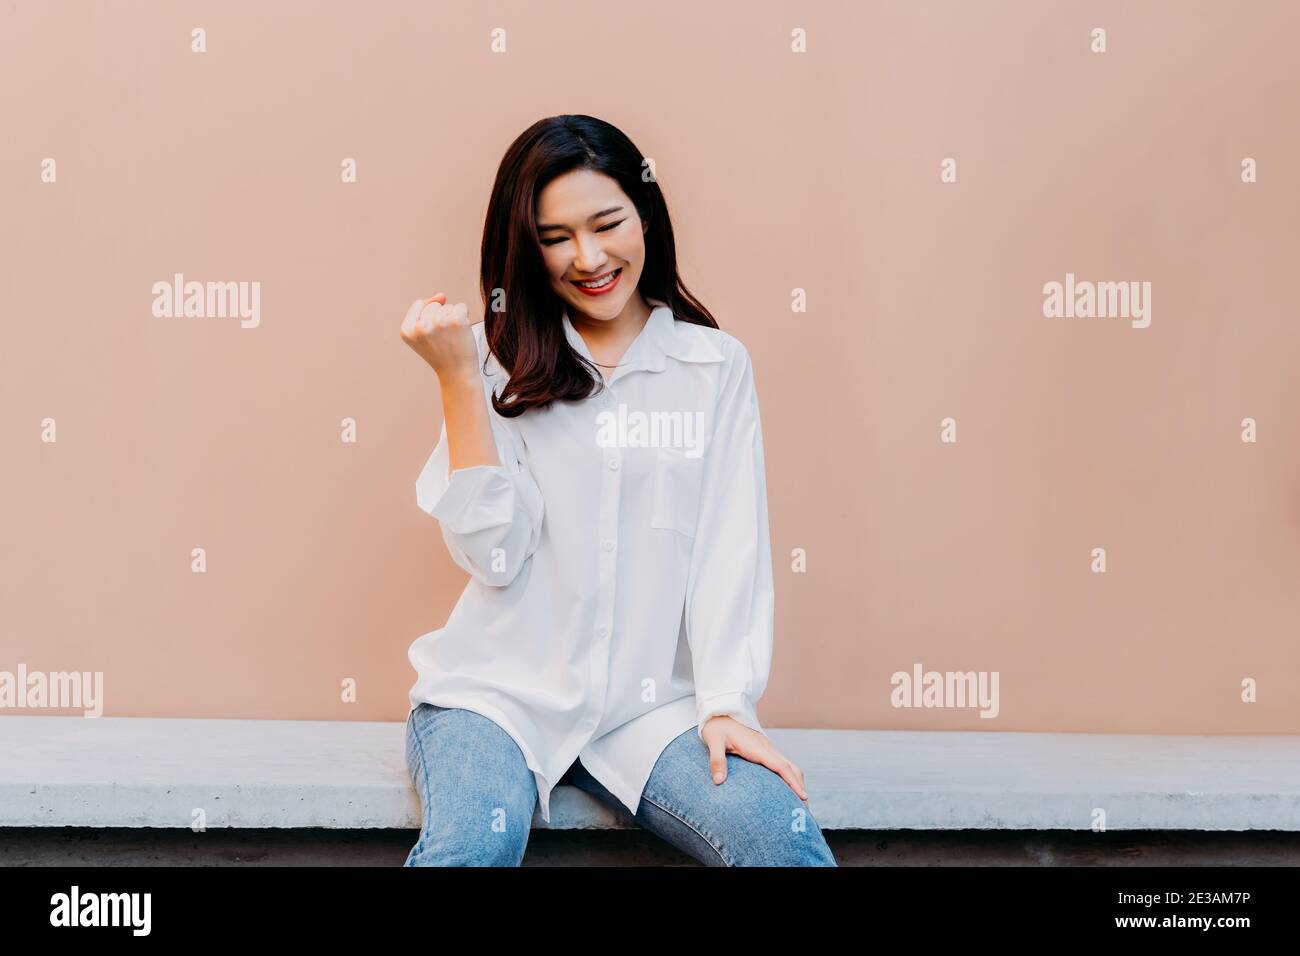 Jubelnde junge asiatische Mädchen hält ihre Fäuste fest wie gewinnen großen Preis, sitzt auf Betonbank mit Wüste Sand farbigen Wand im Hintergrund tragen lässige weiße Hemd und Jeans Kleidung Stockfoto